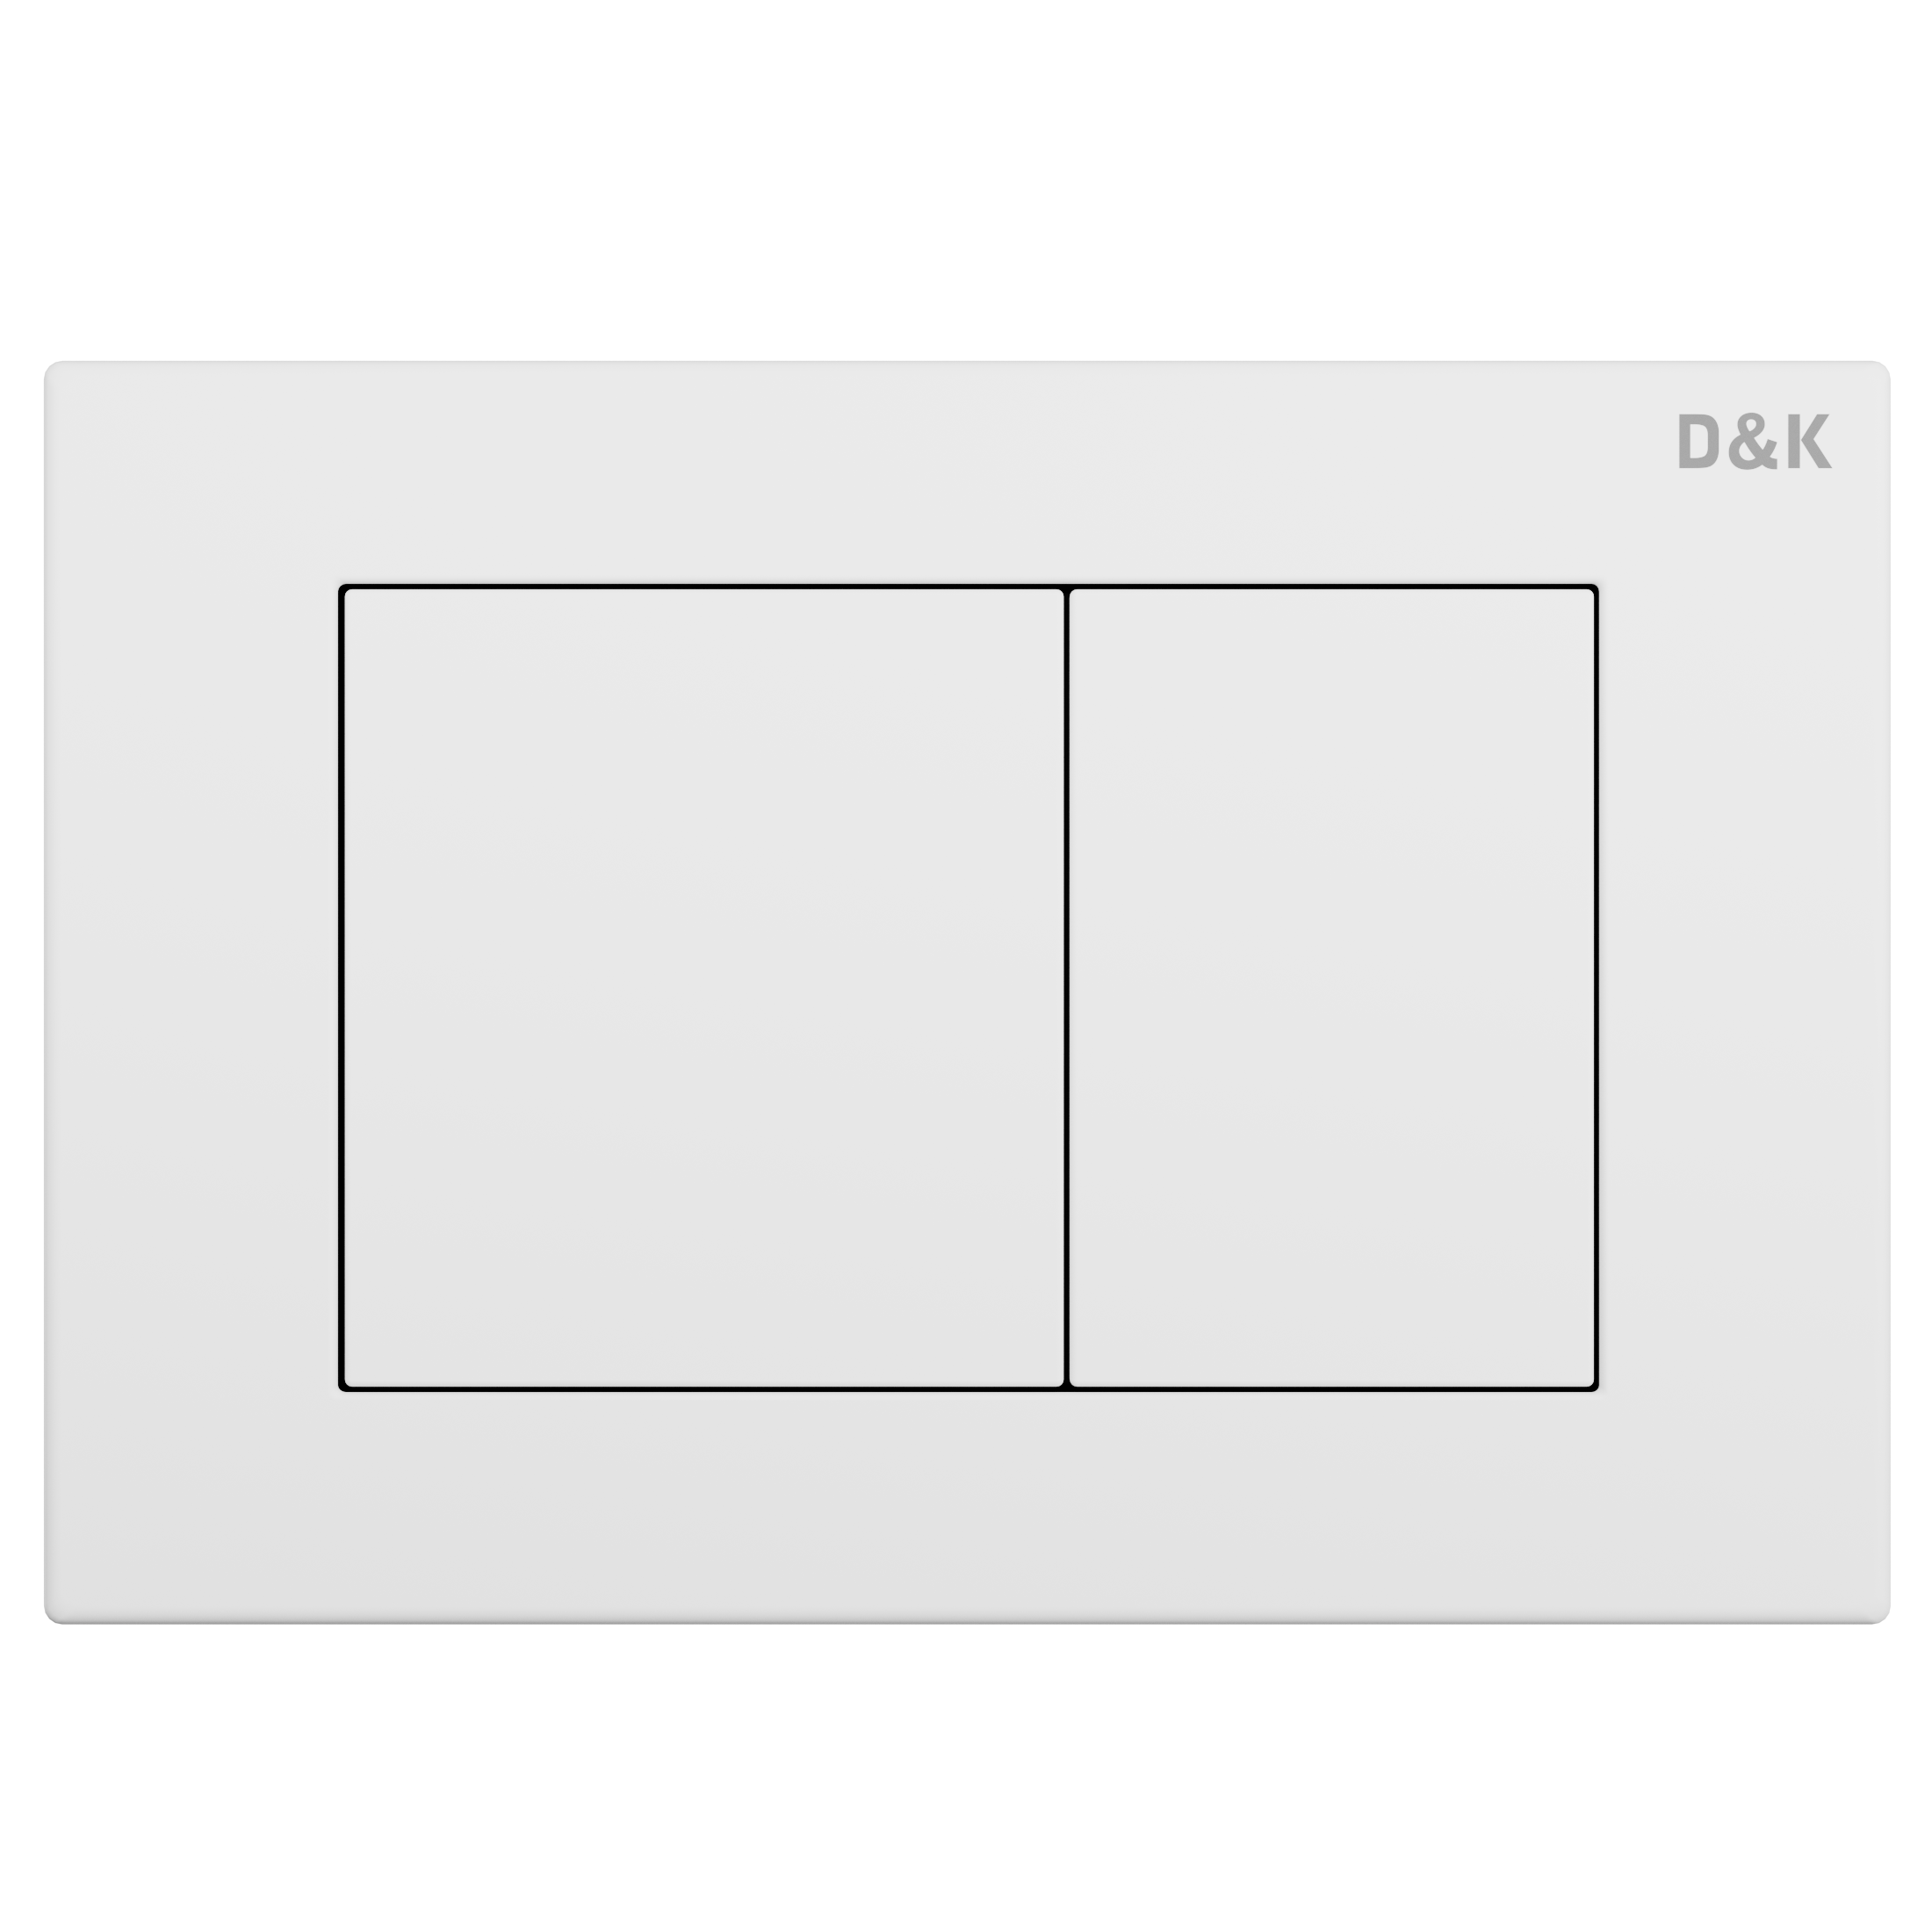 Инсталляция рамная скрытого монтажа D&K DI8640116  400*165*1160мм (комплект 2 в 1) + клавиша Белый